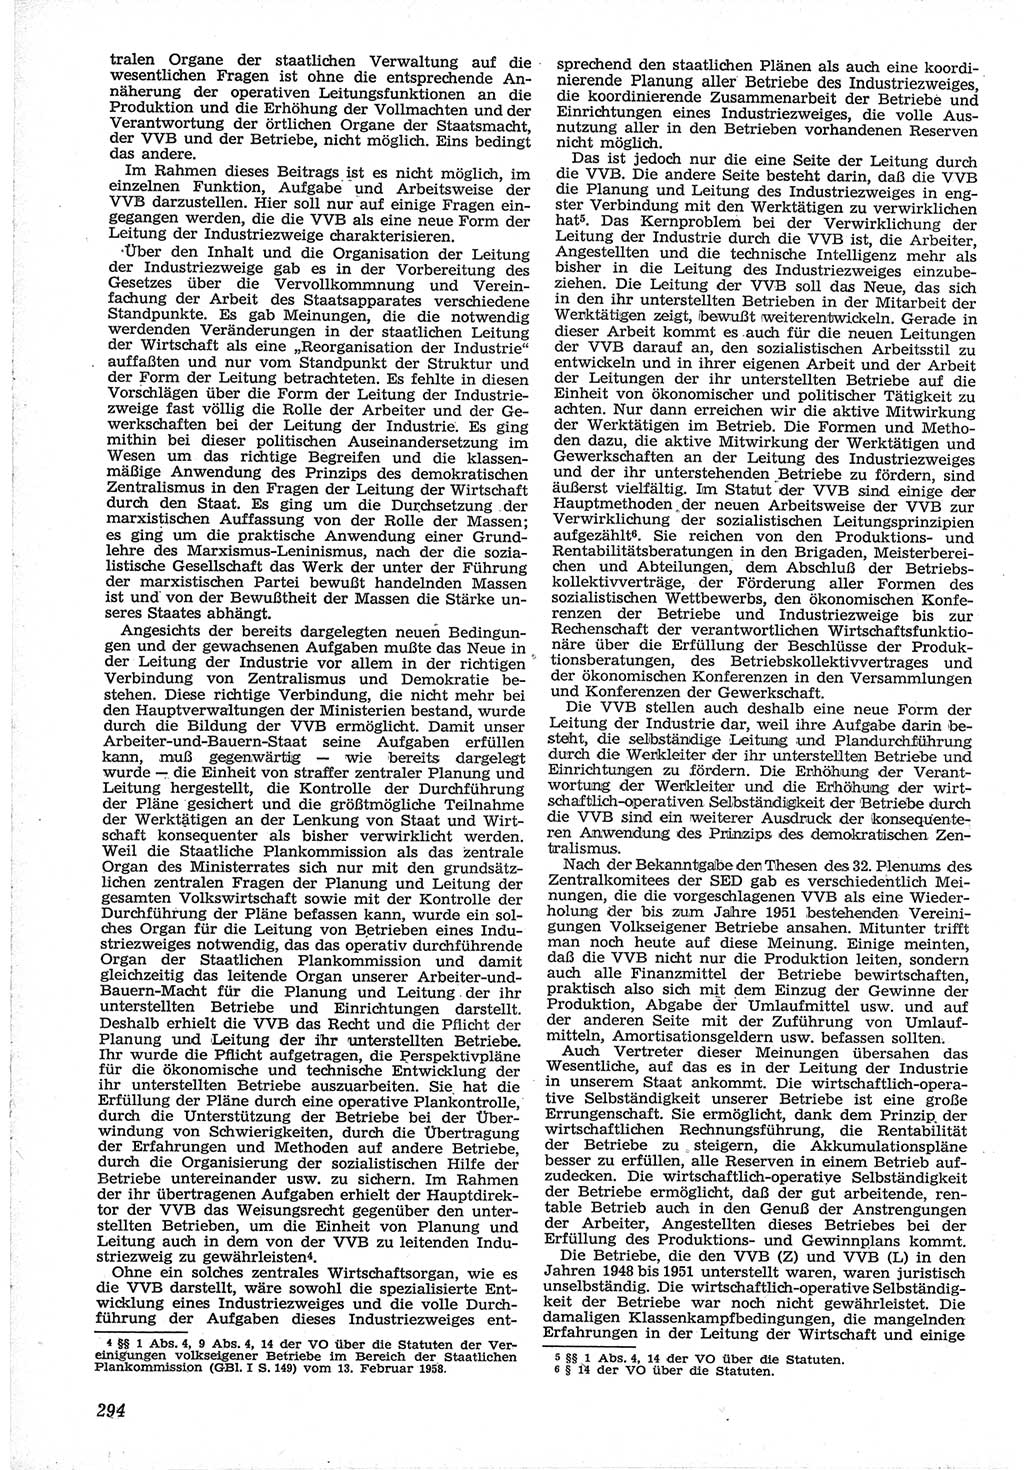 Neue Justiz (NJ), Zeitschrift für Recht und Rechtswissenschaft [Deutsche Demokratische Republik (DDR)], 12. Jahrgang 1958, Seite 294 (NJ DDR 1958, S. 294)